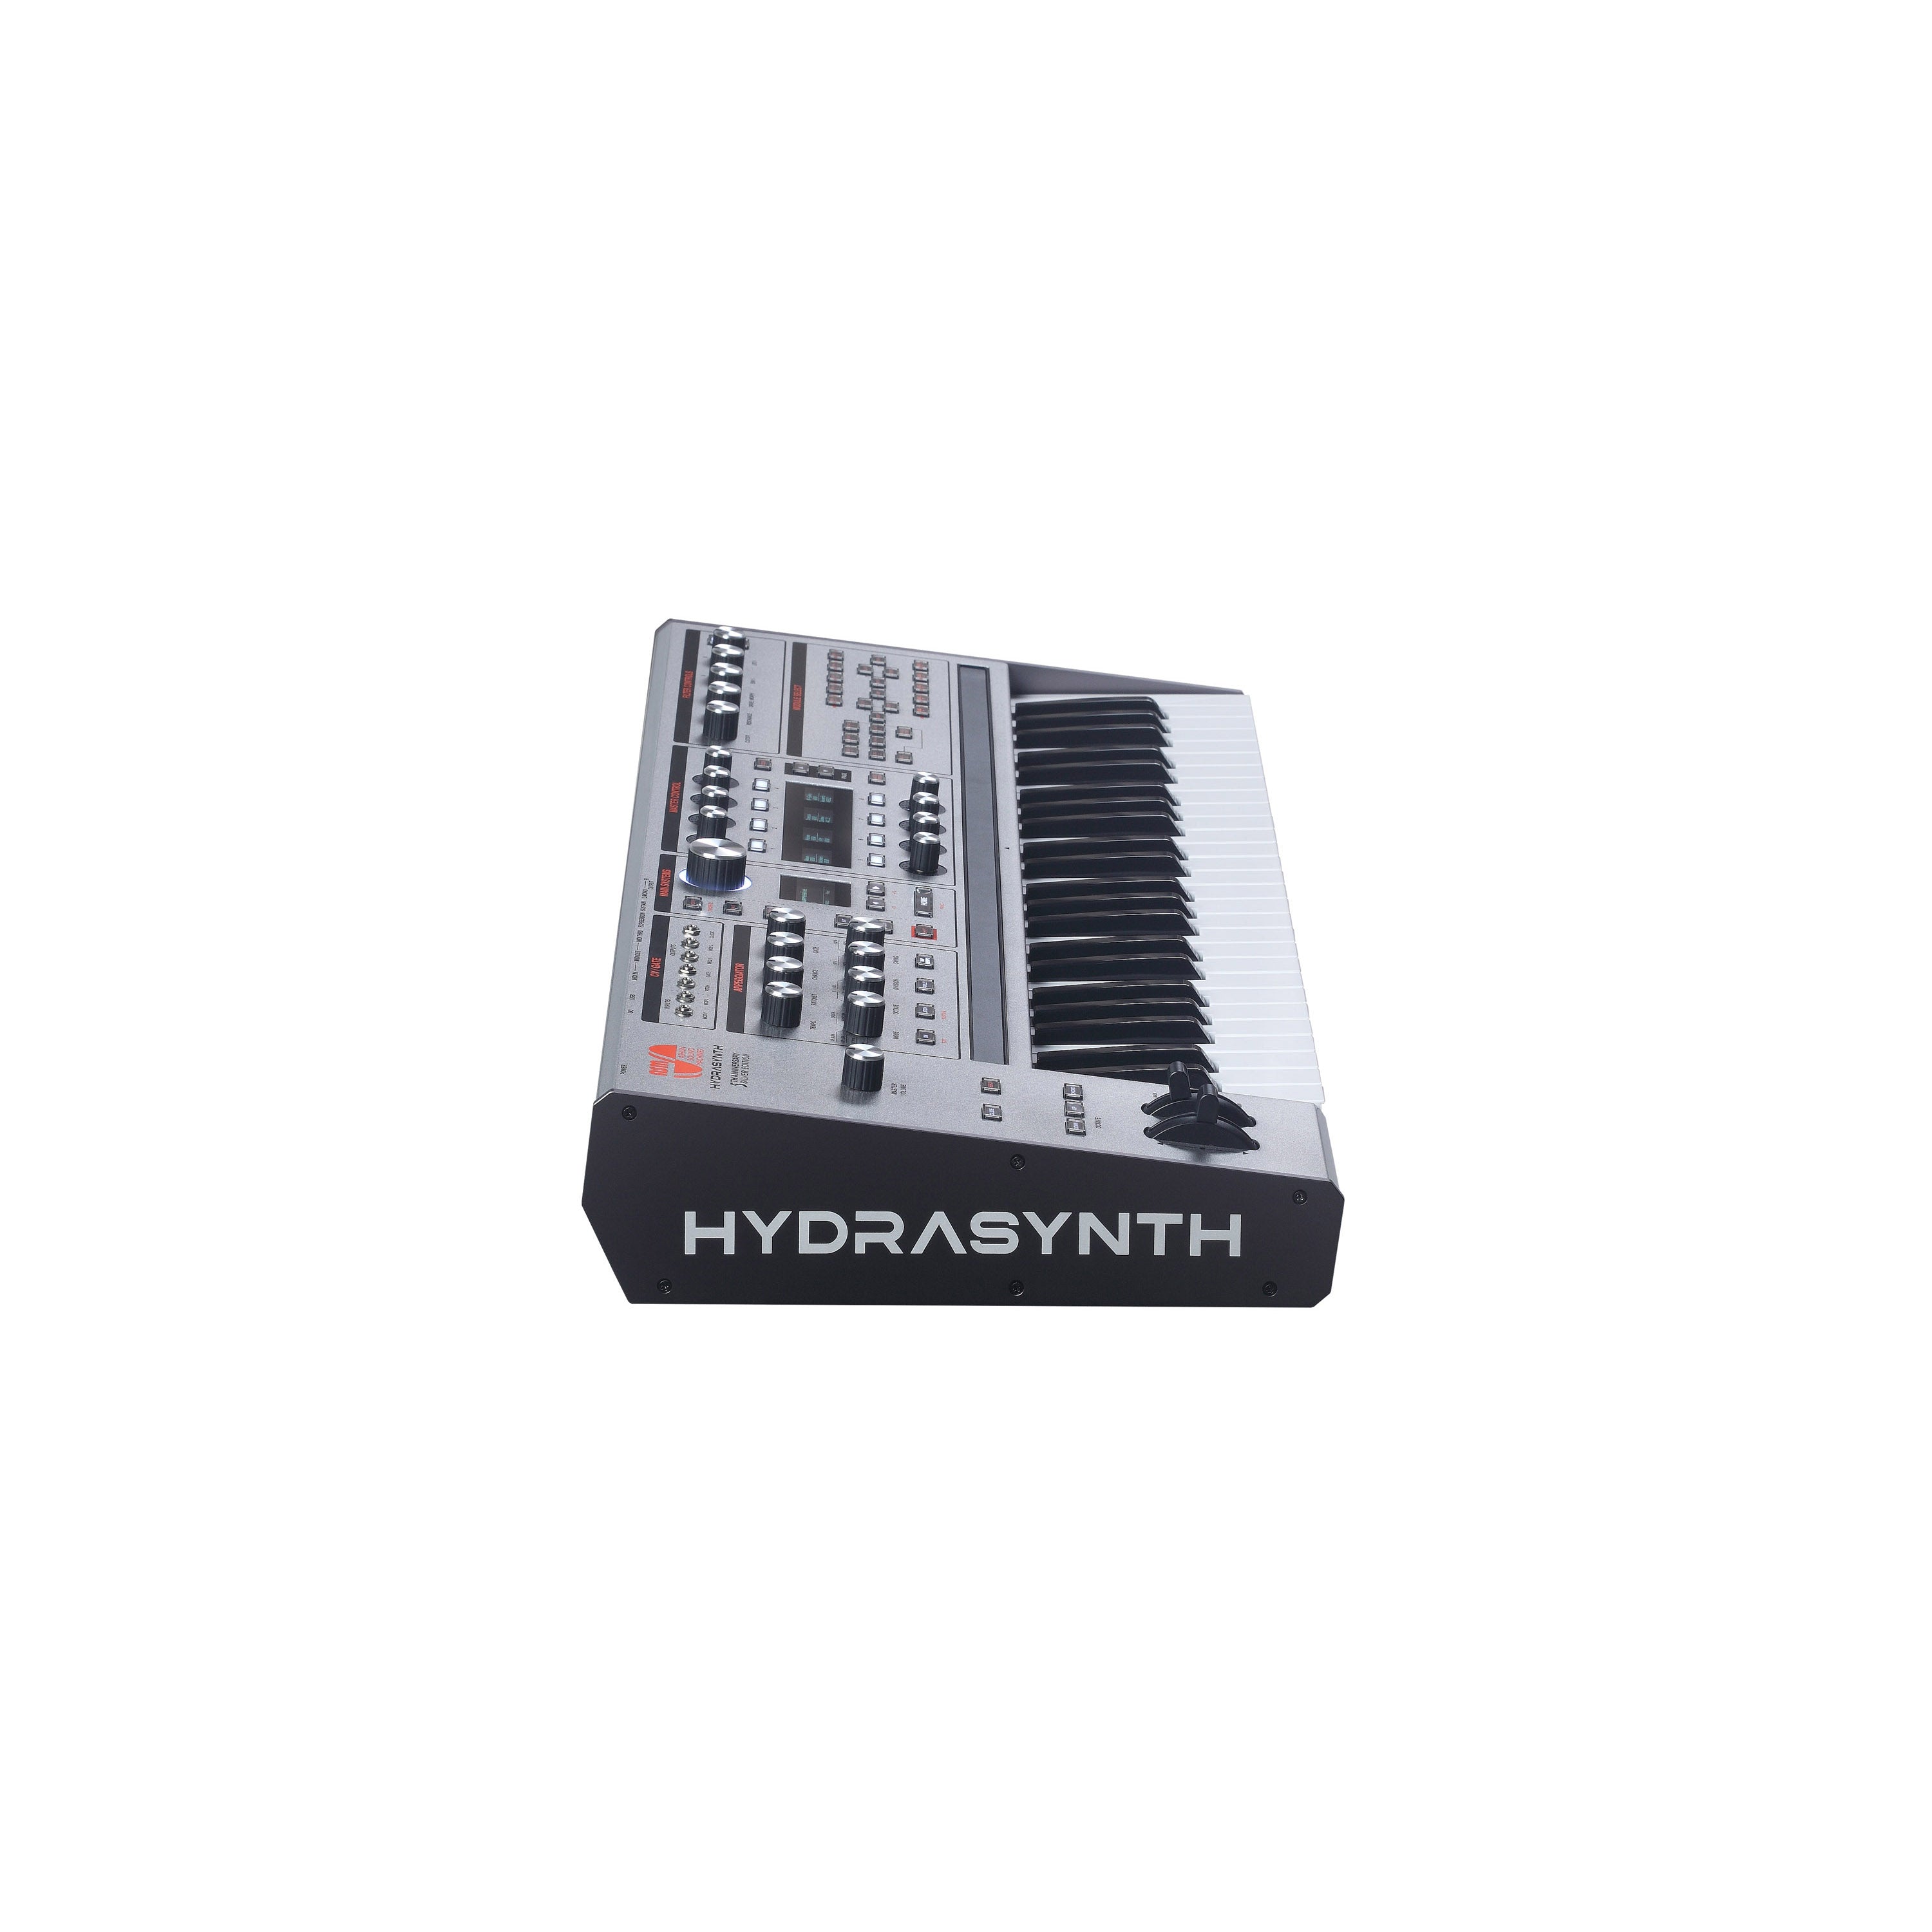 ASM Hydrasynth Keyboard Silver Edition